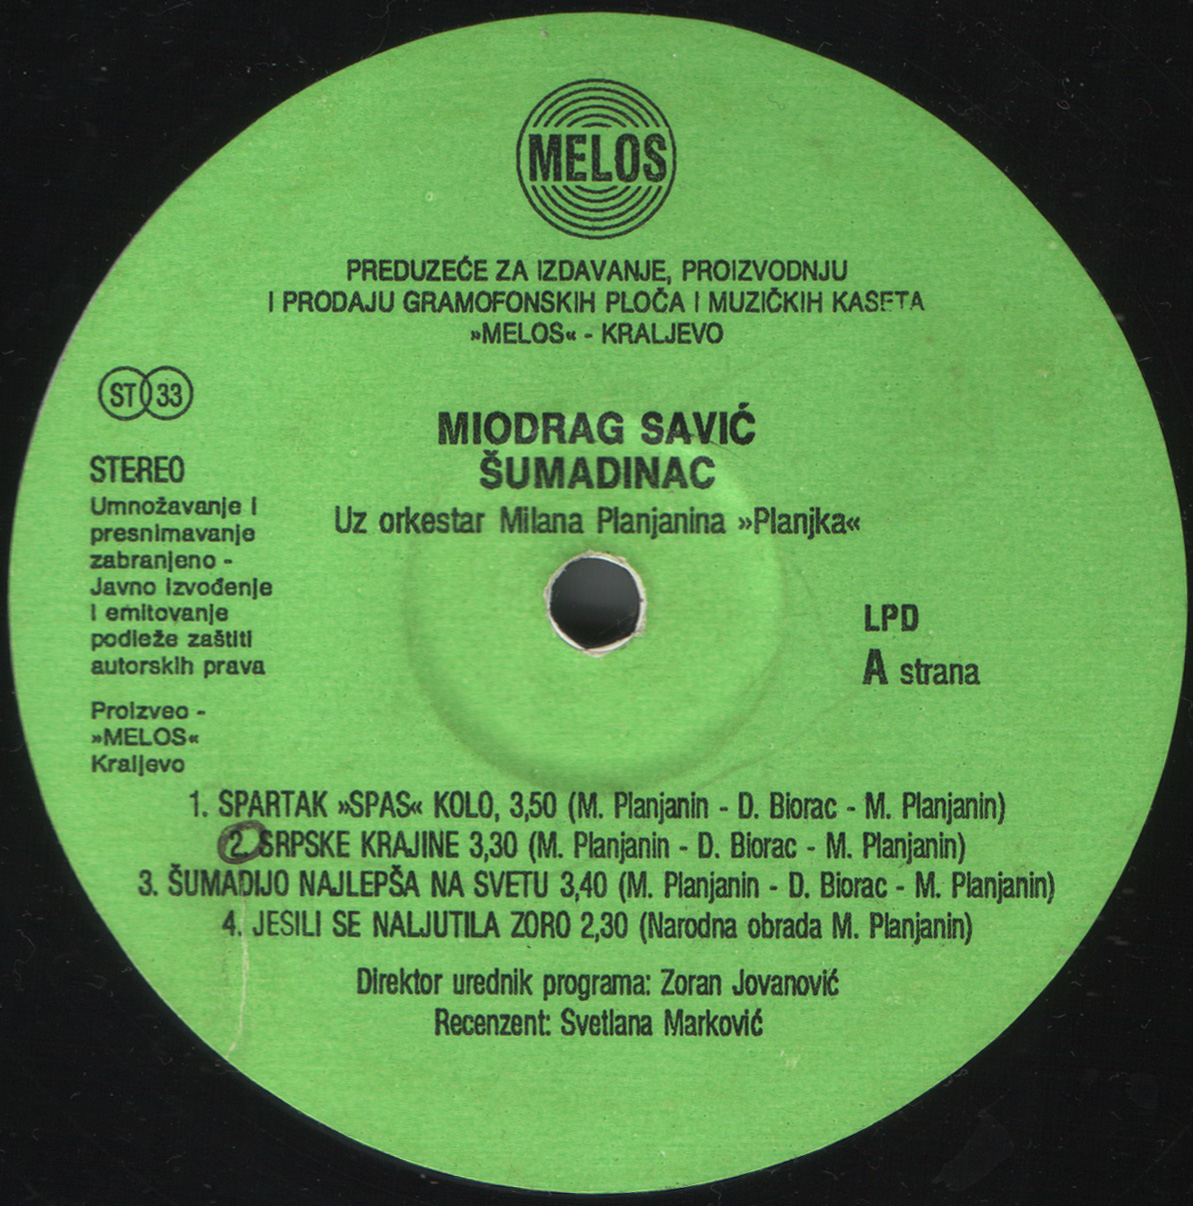 Miodrag Savic Sumadinac 1993 A